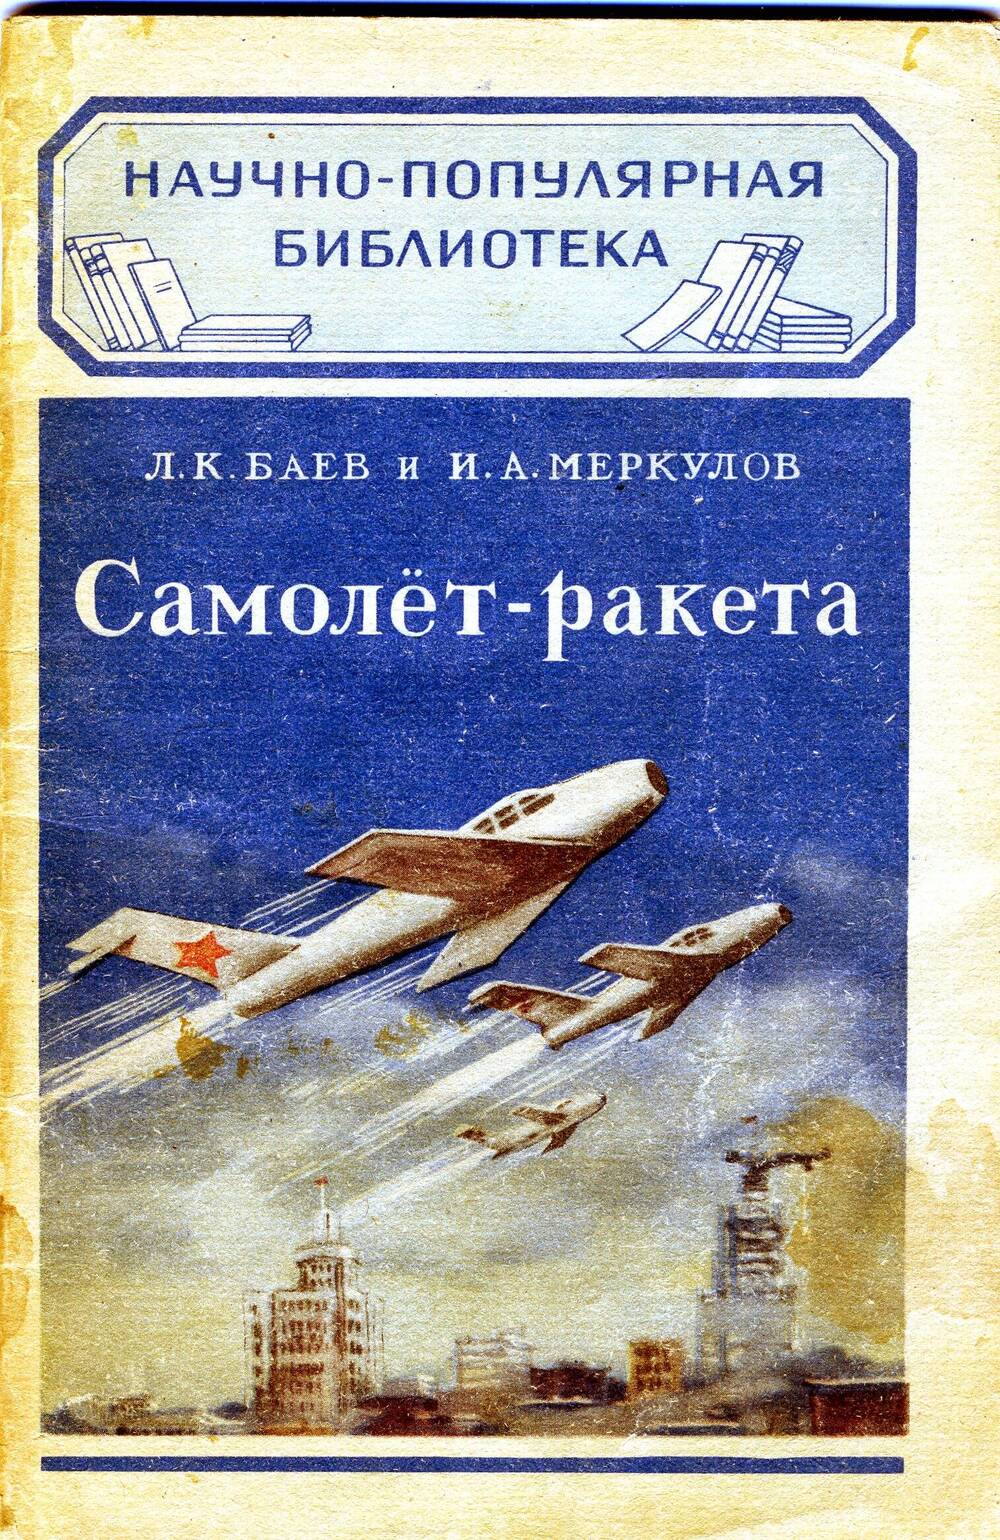 Книга Л.К. Баева и И.А. Меркулова Самолет-ракета